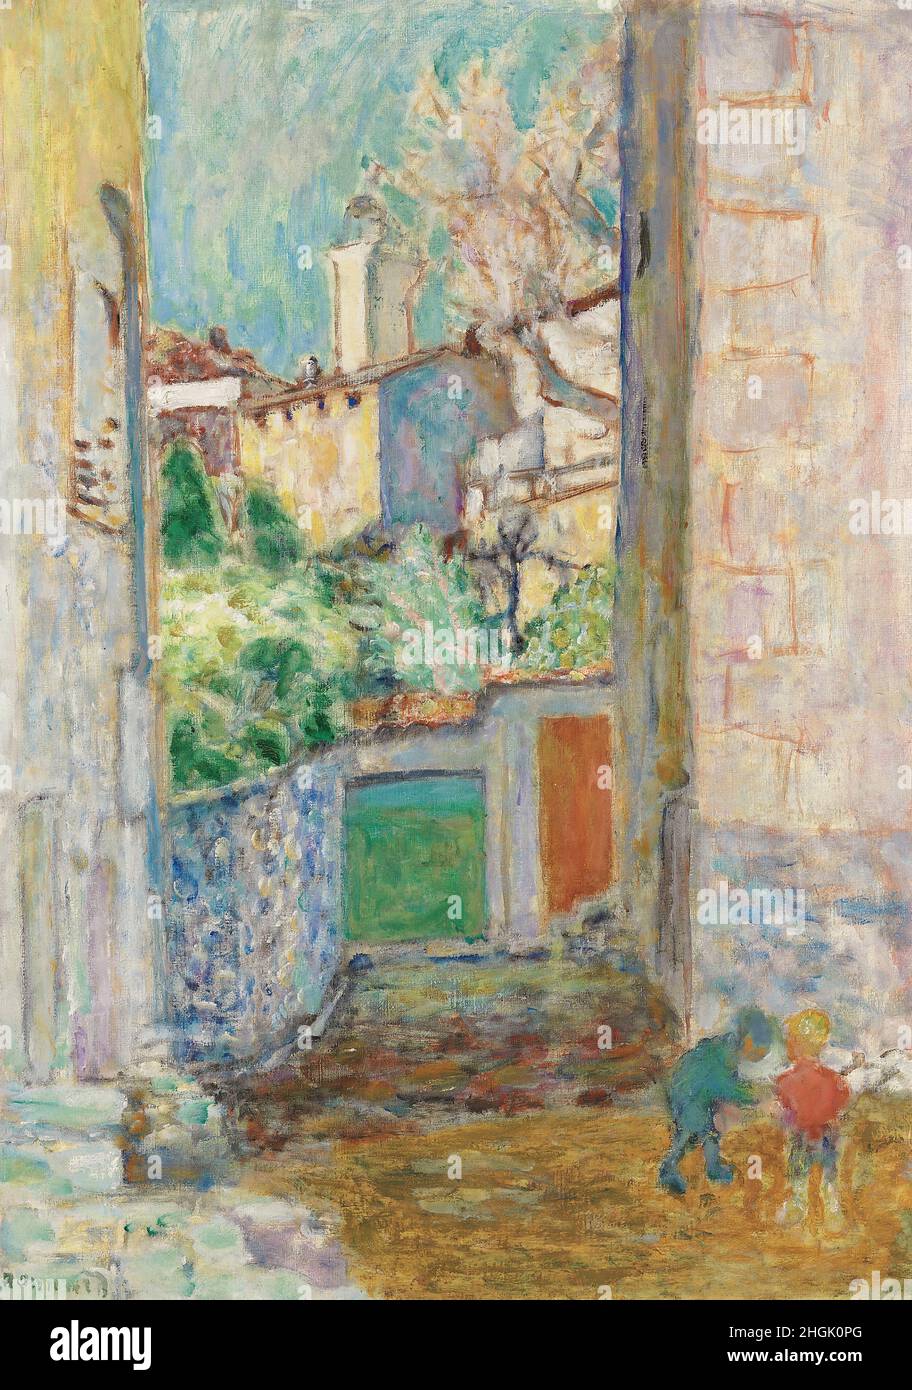 Bonnard Pierre - Collezione privata - Impasse ou la ruelle - le Cannet - 1925 - olio su tela 74 x 53 cm - Foto Stock